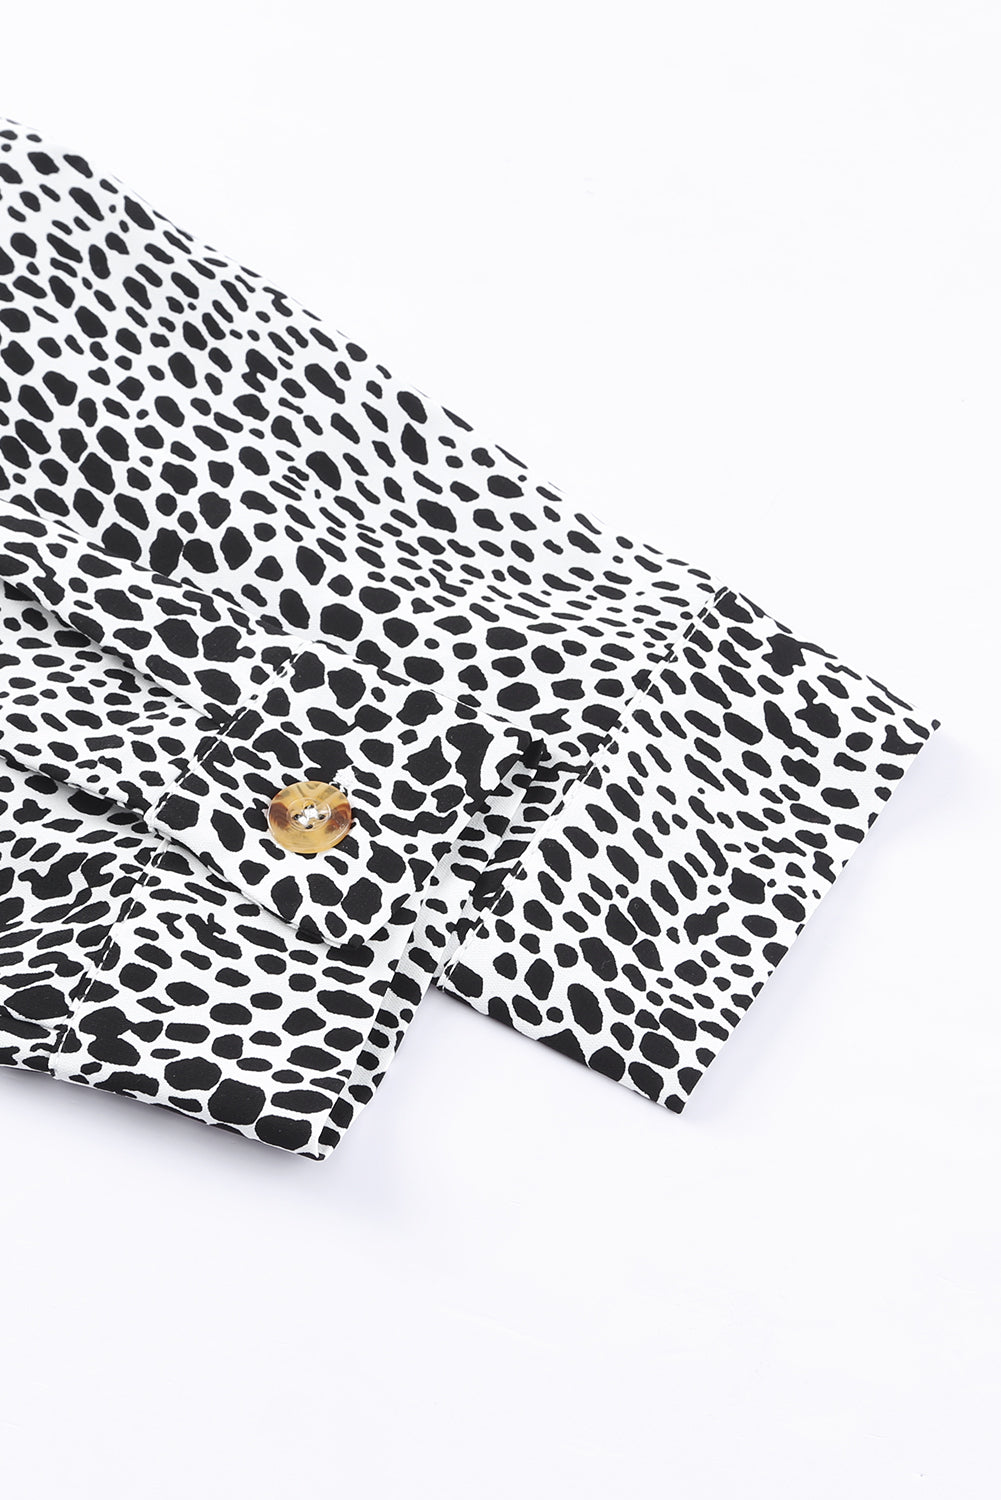 Cheetah Casual Long Sleeve Button Up Shirt Dress